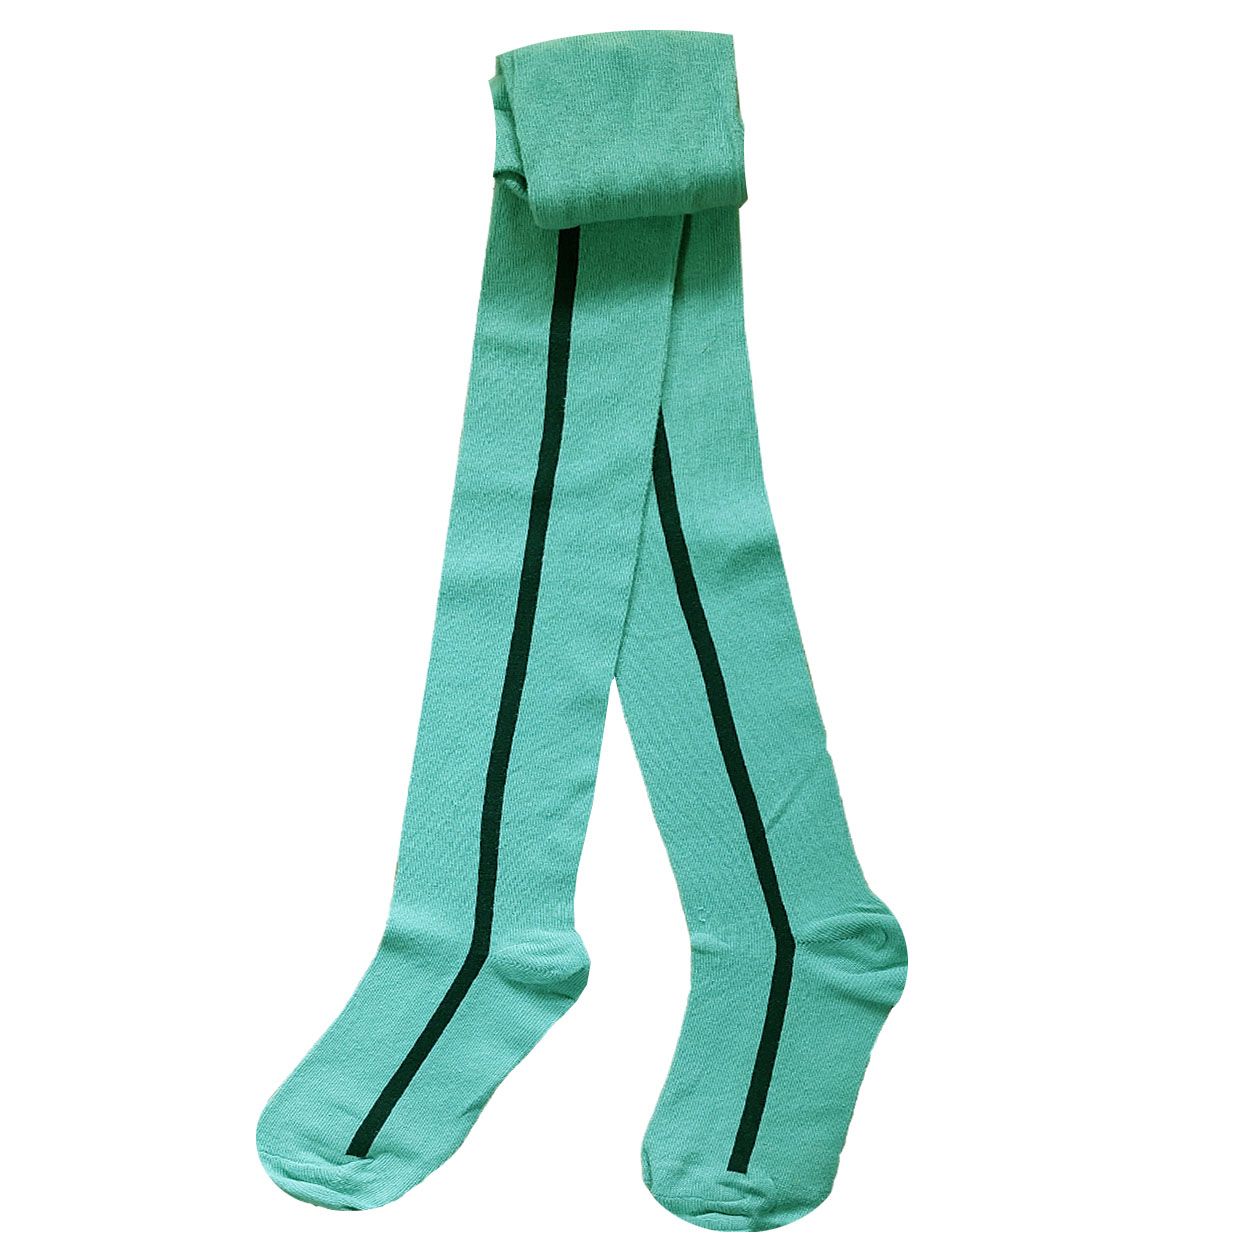 جوراب شلواری دخترانه الایو مدل لوپیل 03 رنگ سبز -  - 1